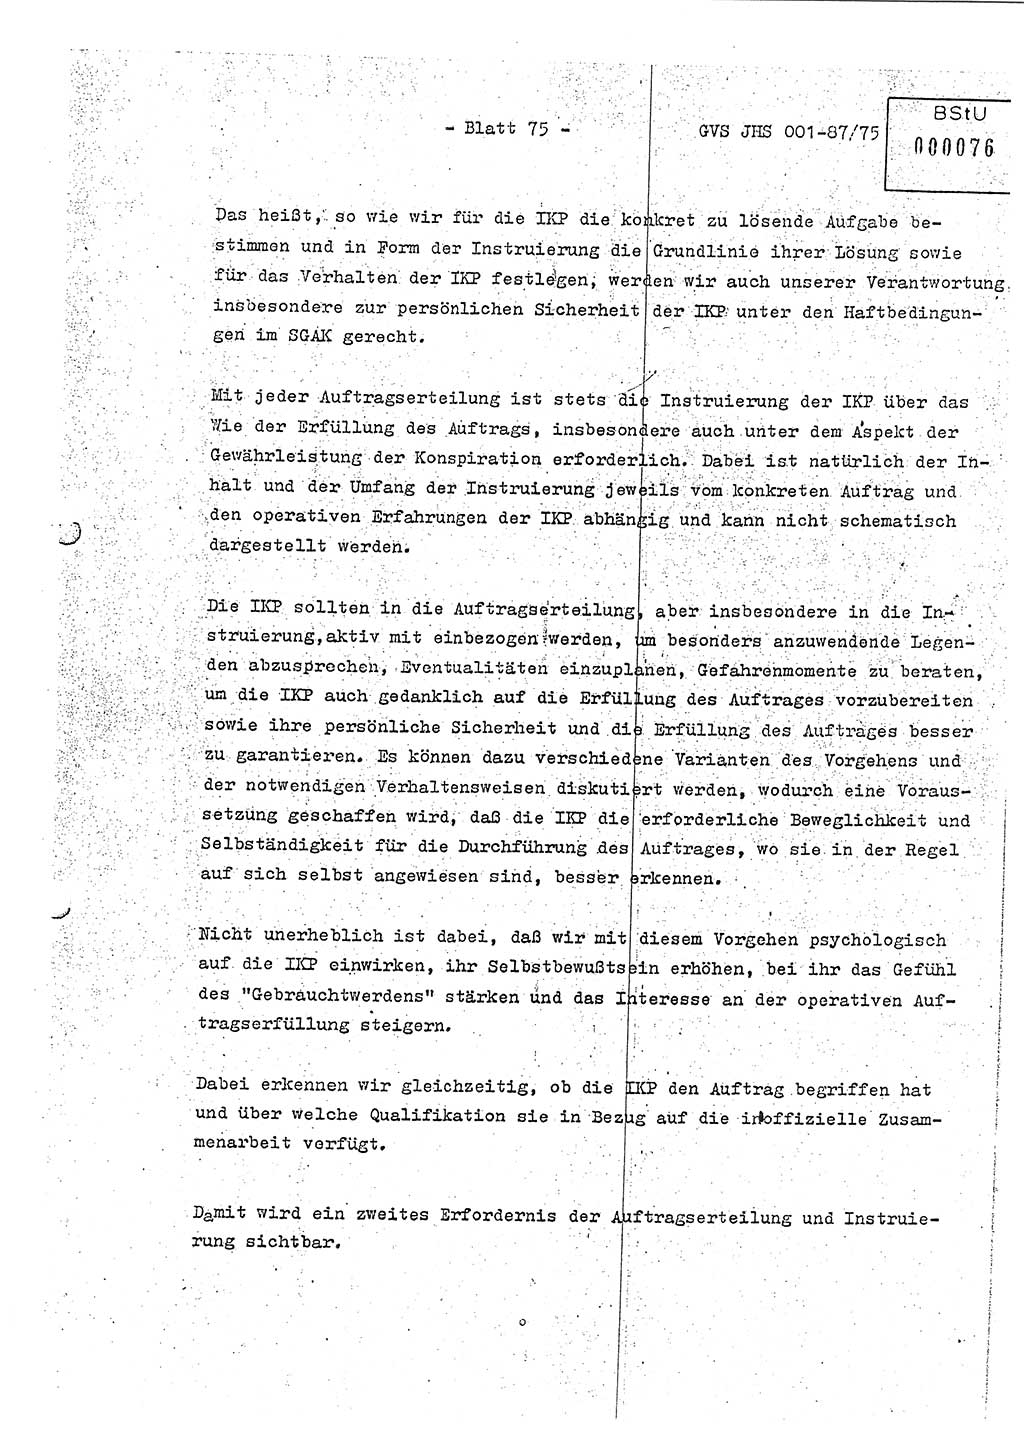 Diplomarbeit Hauptmann Volkmar Heinz (Abt. ⅩⅣ), Oberleutnant Lothar Rüdiger (BV Lpz. Abt. Ⅺ), Ministerium für Staatssicherheit (MfS) [Deutsche Demokratische Republik (DDR)], Juristische Hochschule (JHS), Geheime Verschlußsache (GVS) o001-87/75, Potsdam 1975, Seite 75 (Dipl.-Arb. MfS DDR JHS GVS o001-87/75 1975, S. 75)